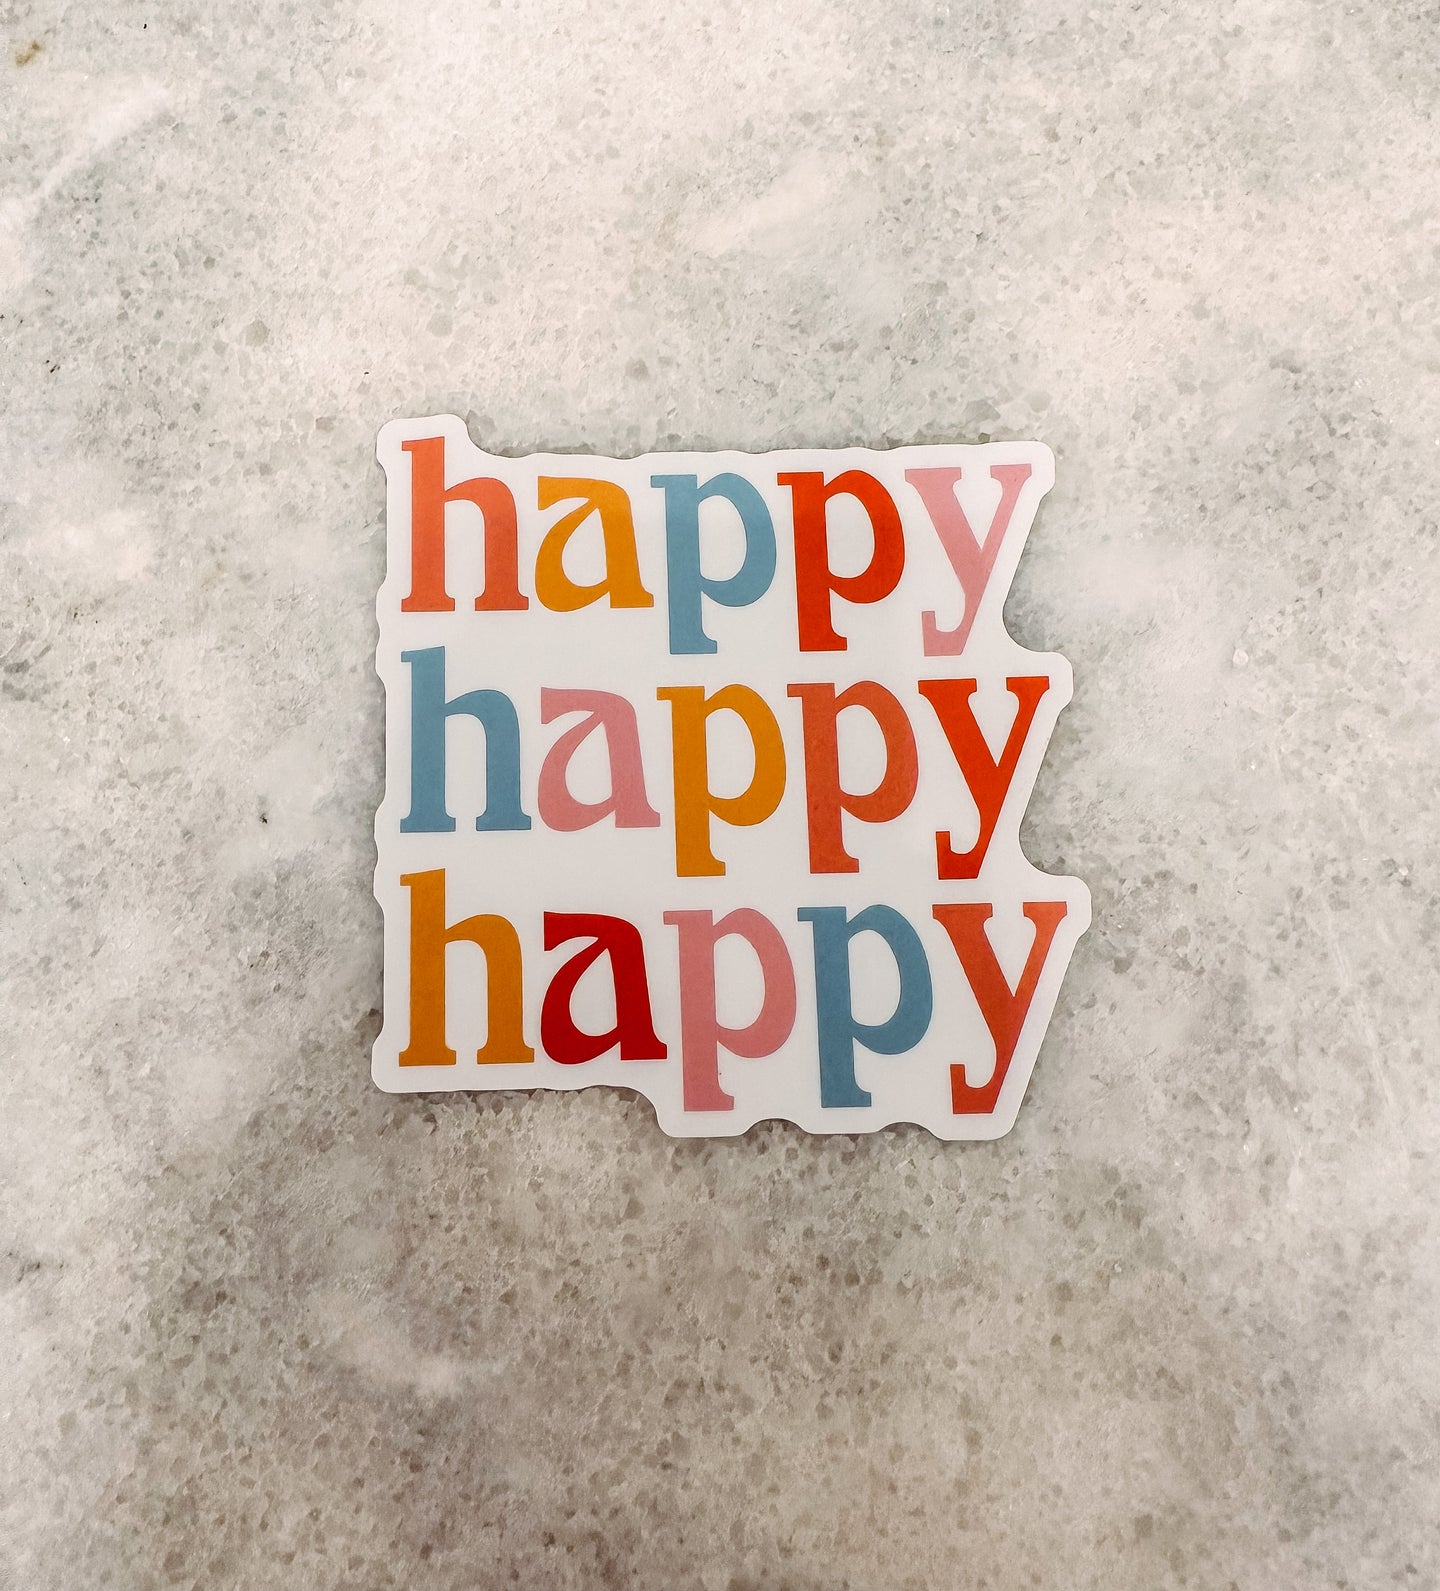 Happy Happy Happy Sticker